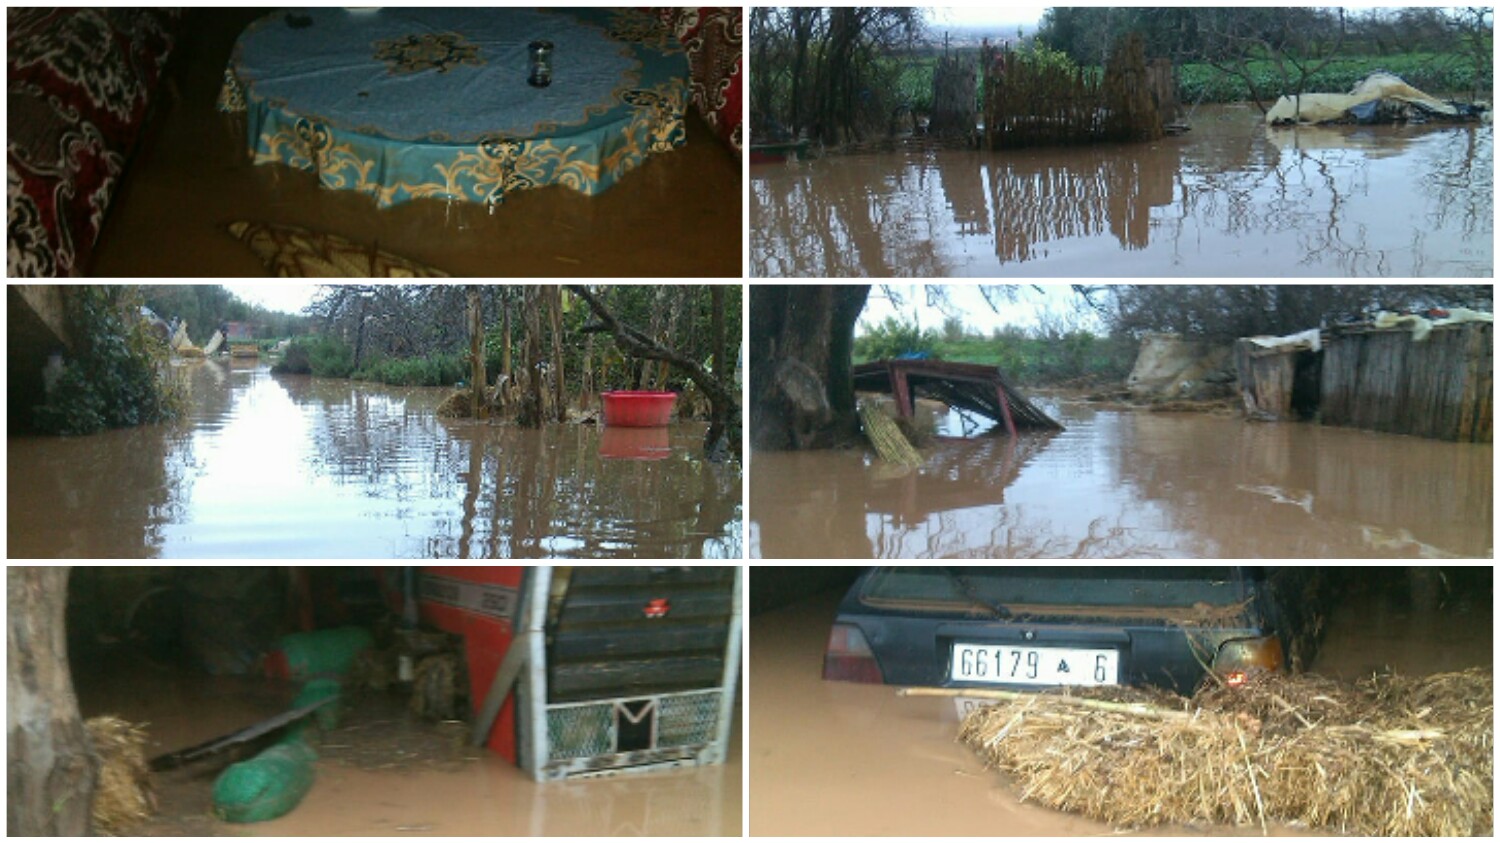 بالصور… الفيضانات تغرق منازل بالقراقب وتكبدهم خسائر فادحة والساكنة تناشد المسؤولين للتدخل